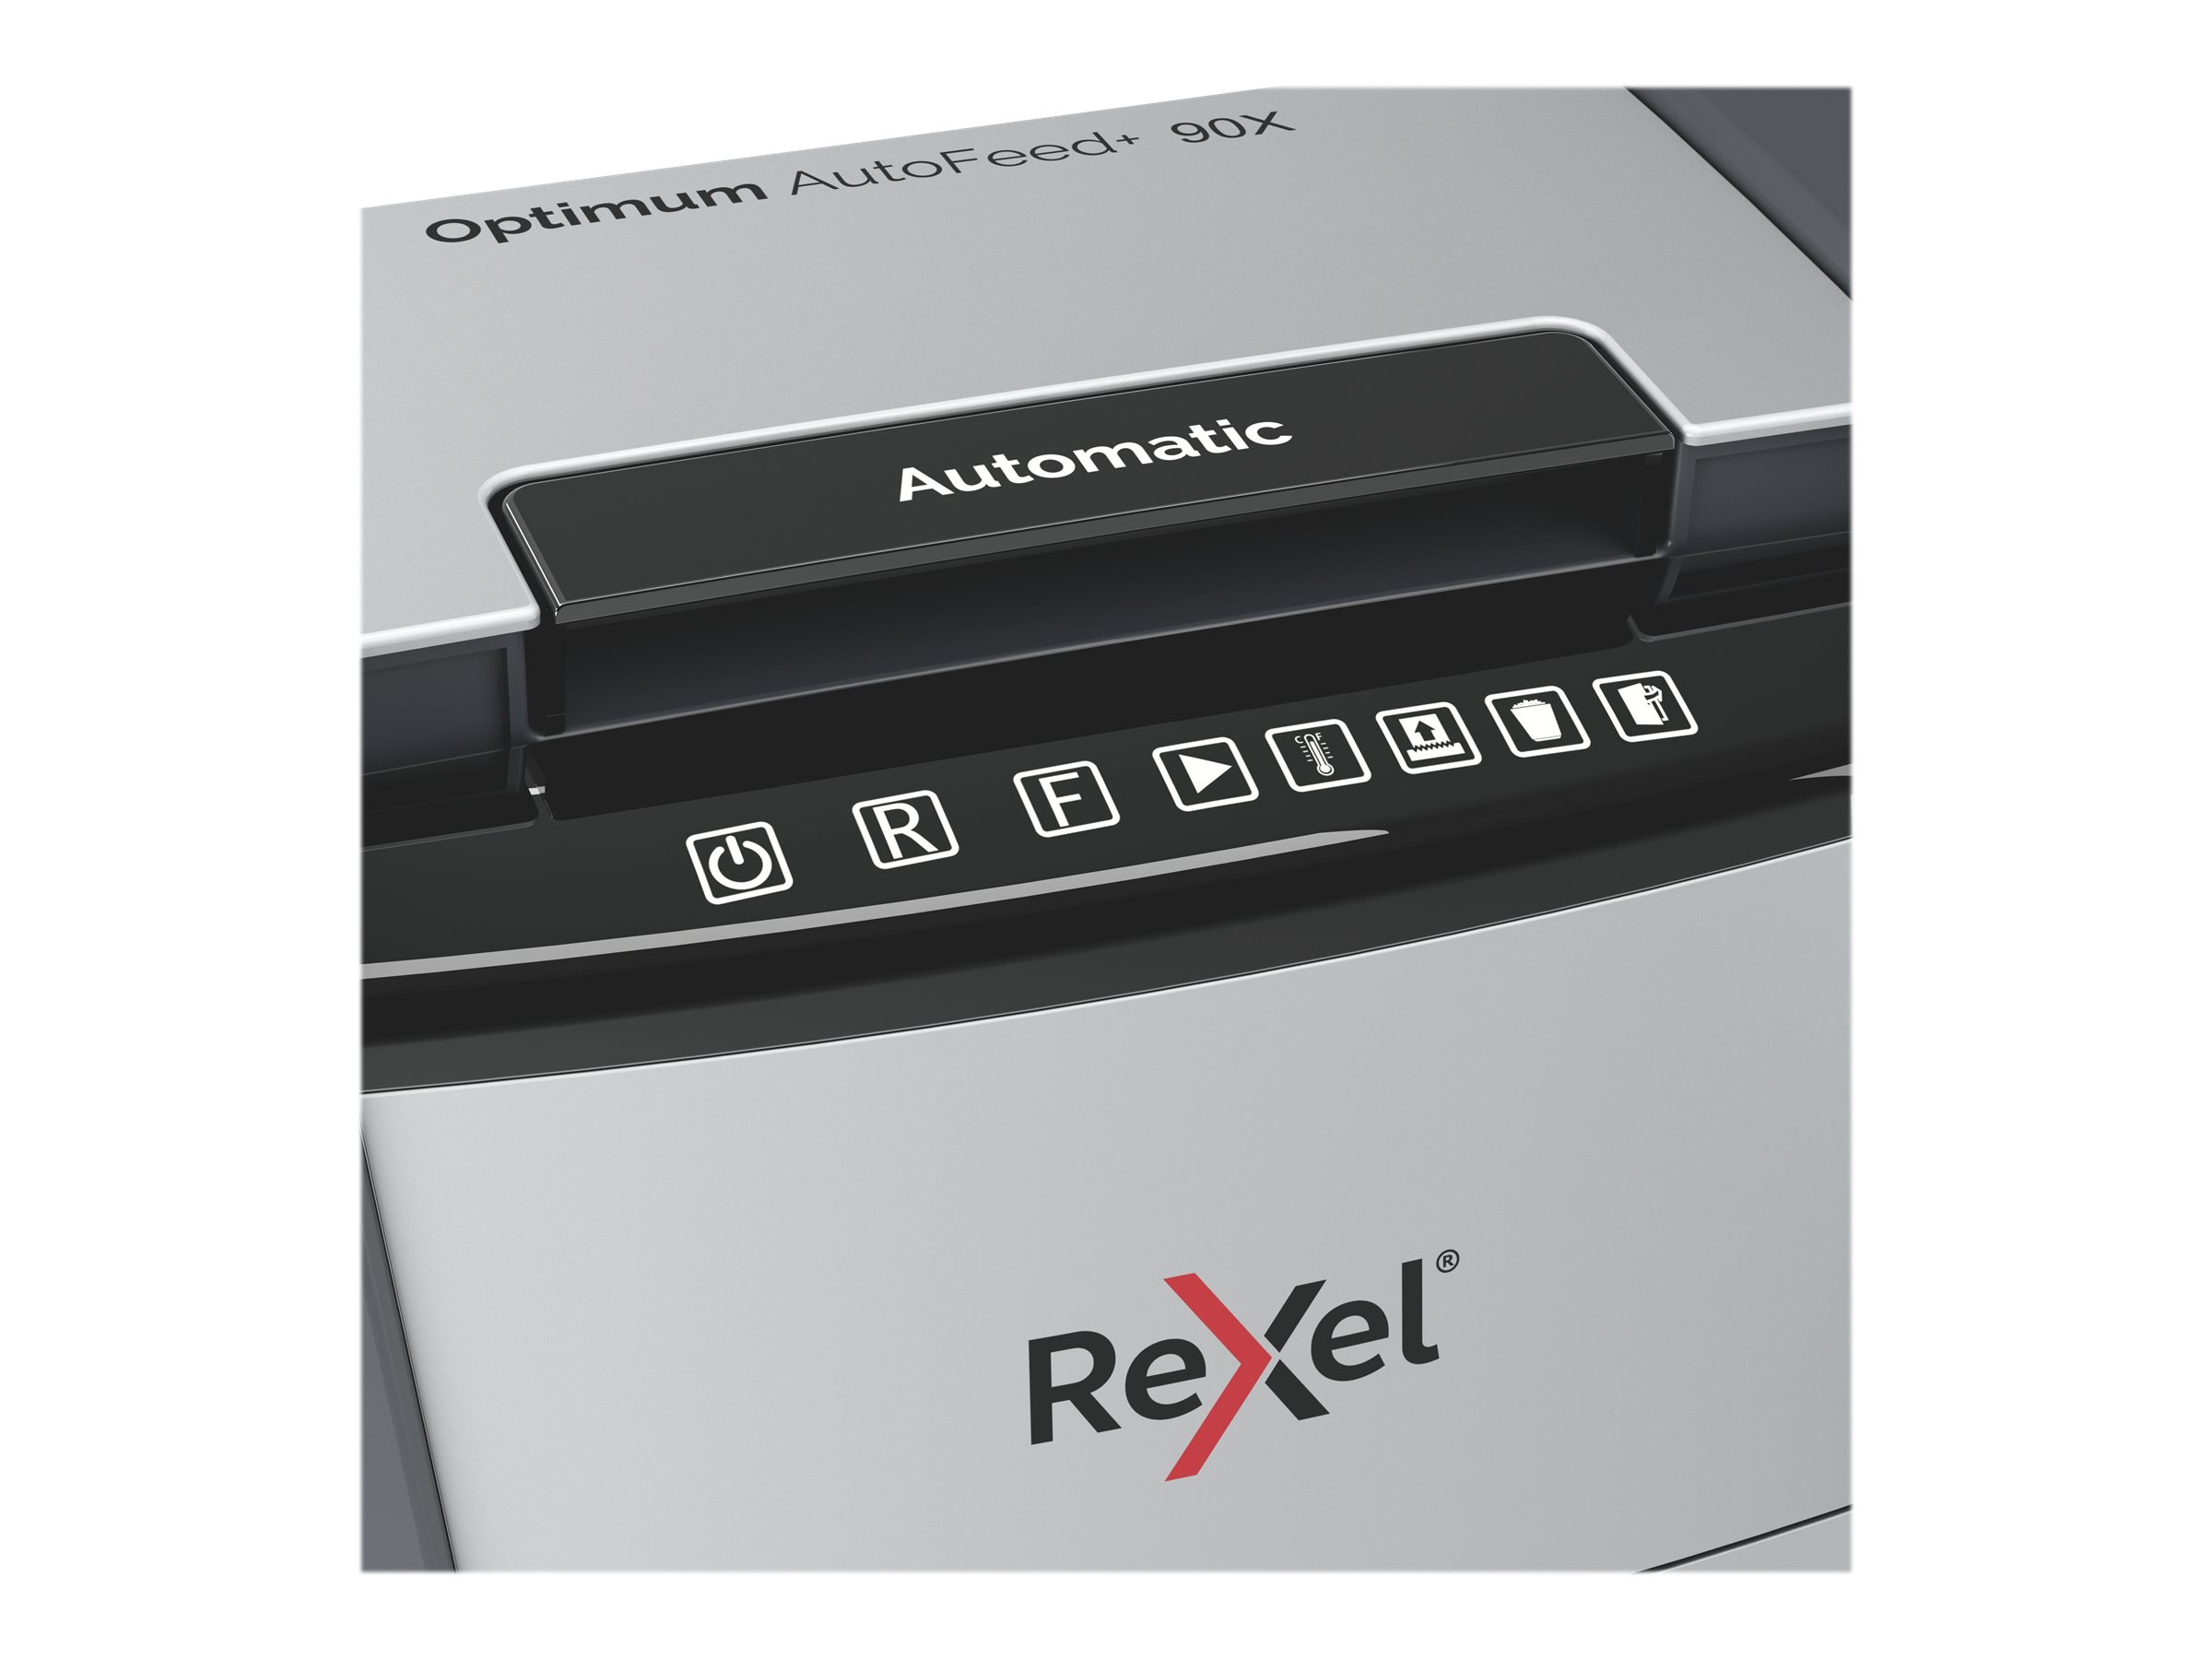 Rexel Optimum AutoFeed+ 90X - Vorzerkleinerer